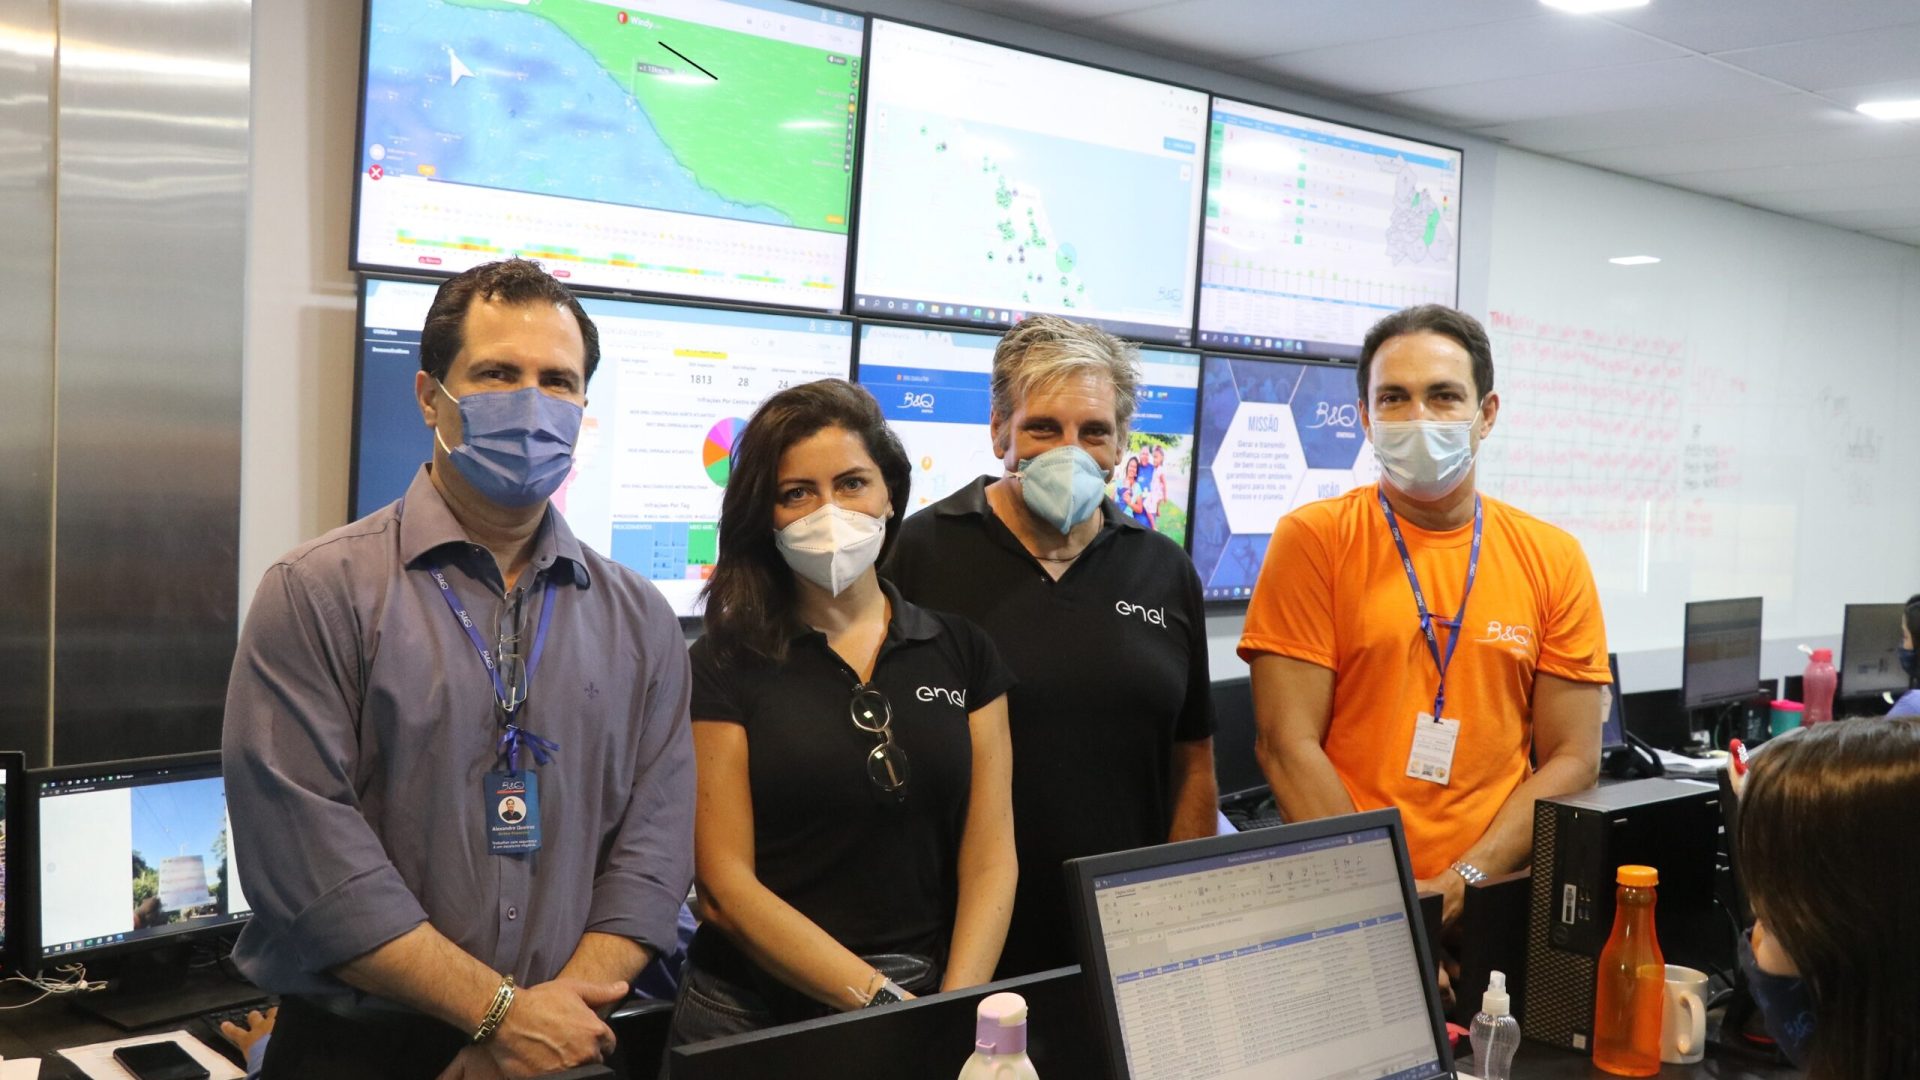 Alexandre Queiroz,Teresa Mistretta , Gino Celentano e Luis Carlos Queiroz no nosso Centro Operacional de Segurança.